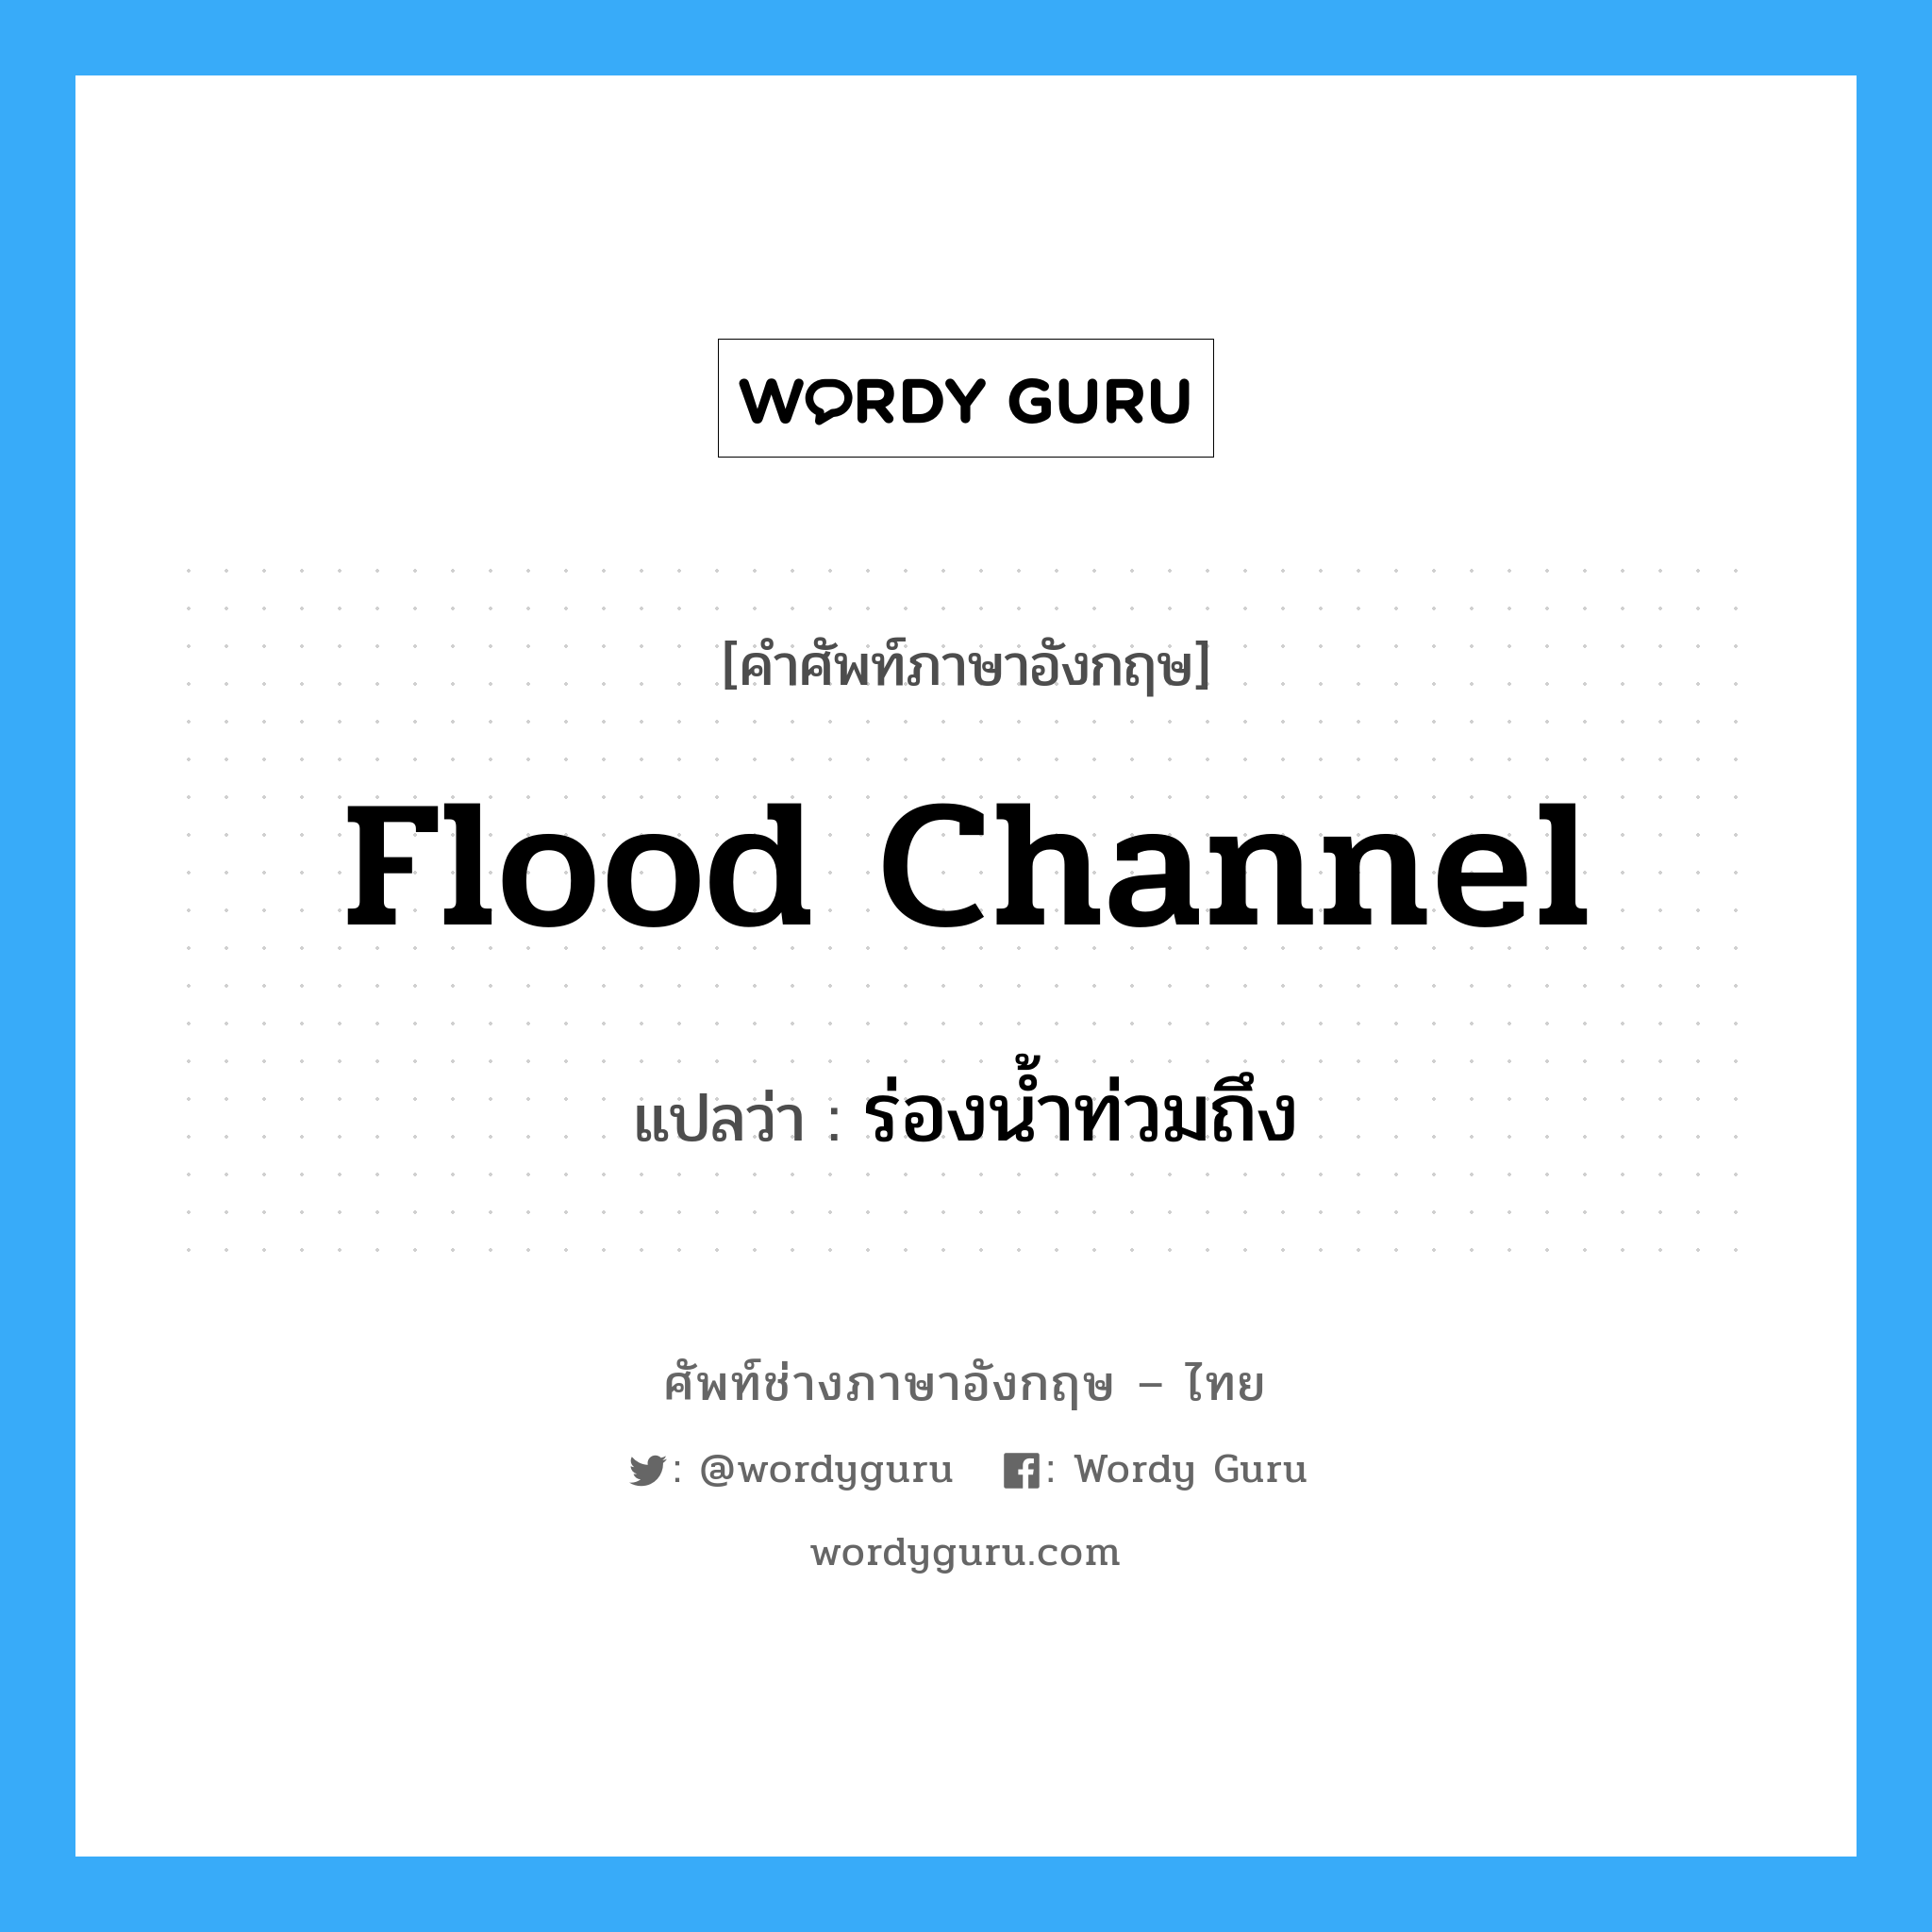 flood channel แปลว่า?, คำศัพท์ช่างภาษาอังกฤษ - ไทย flood channel คำศัพท์ภาษาอังกฤษ flood channel แปลว่า ร่องน้ำท่วมถึง